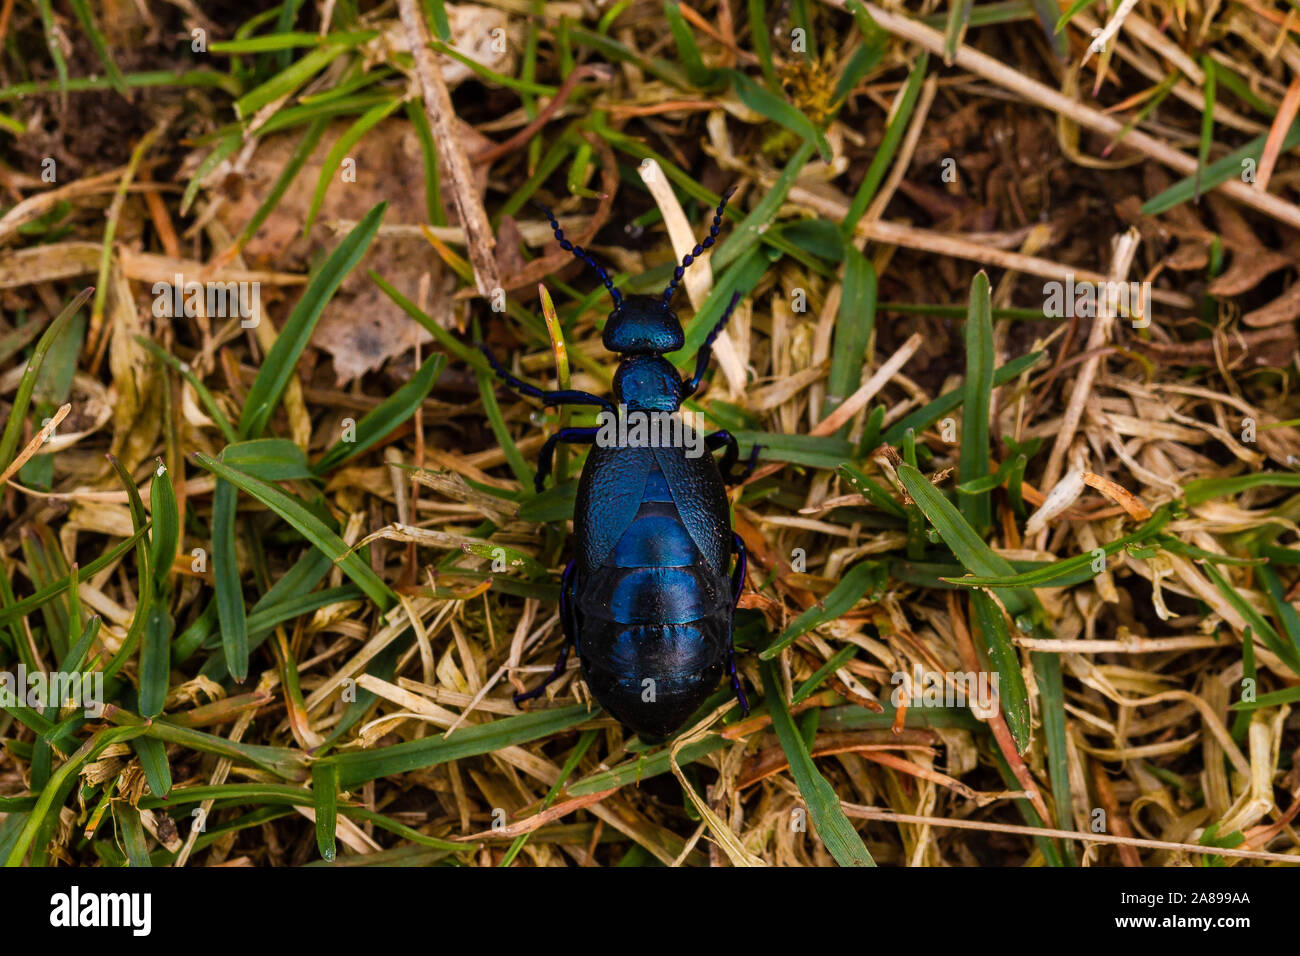 Schwarzblauer Ölkäfer im Gras Draufsicht Stock Photo